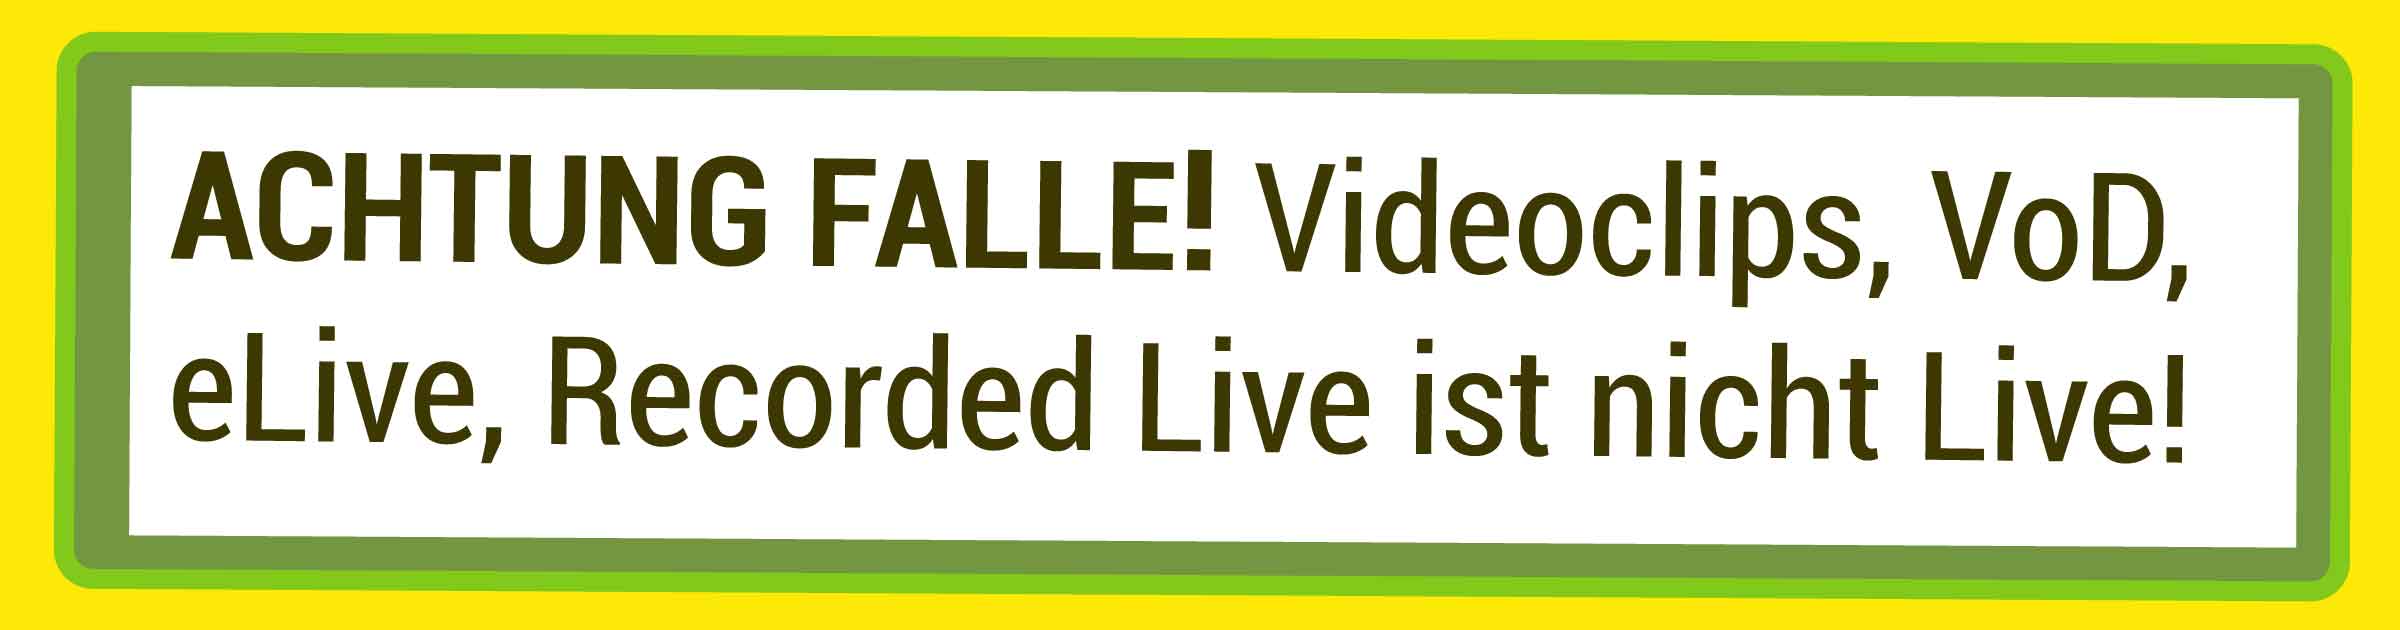 Videoclips werden fälschlicherweise oft als Livestreaming verkauft. Lassen Sie sich nicht täuschen denn es sind aufgezeichnete Videoclips. Das Publikum merkt den Unterschied.